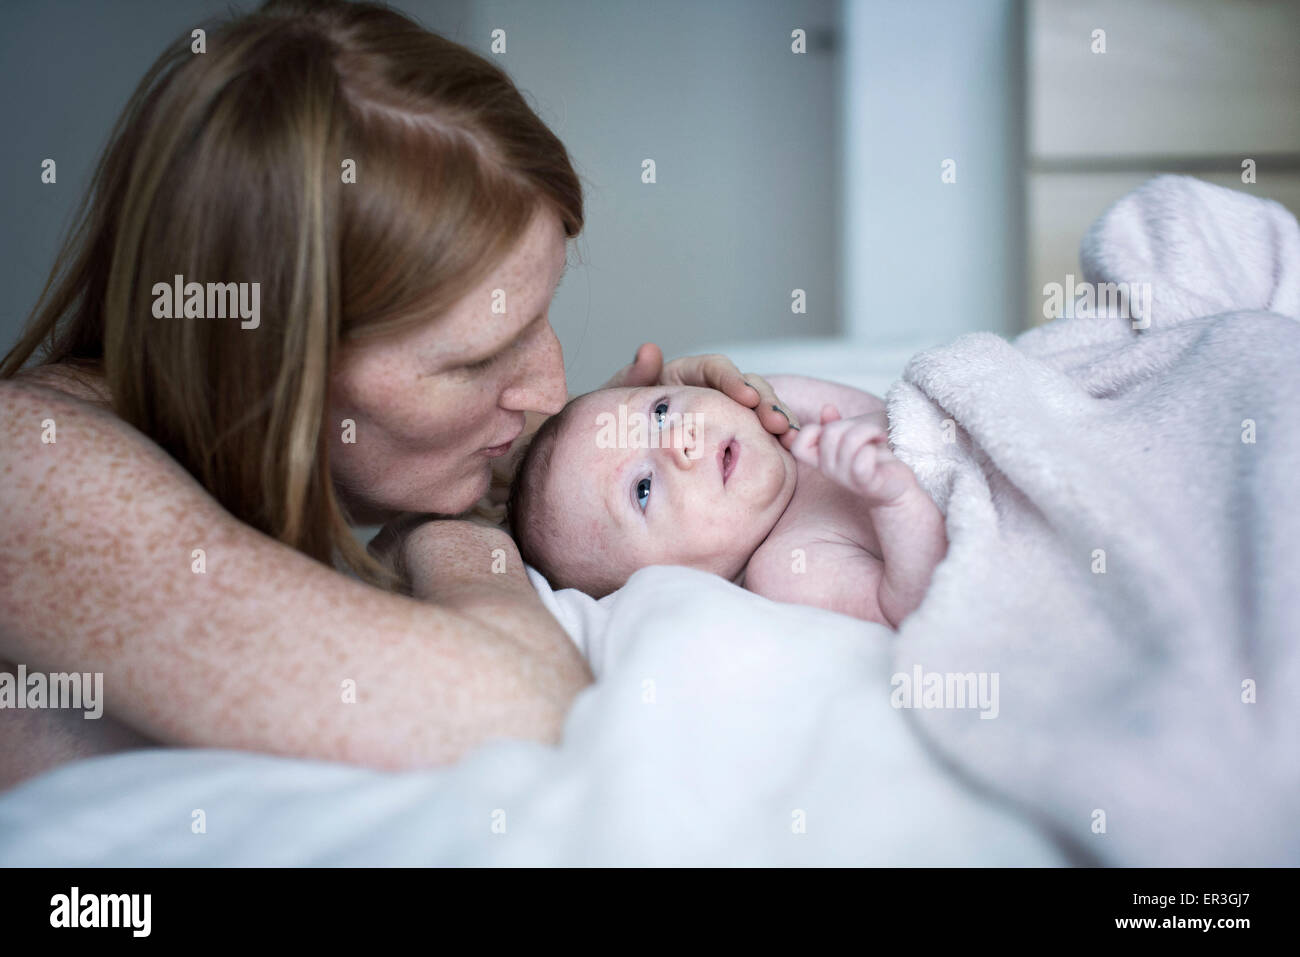 Mother comforting newborn baby Stock Photo